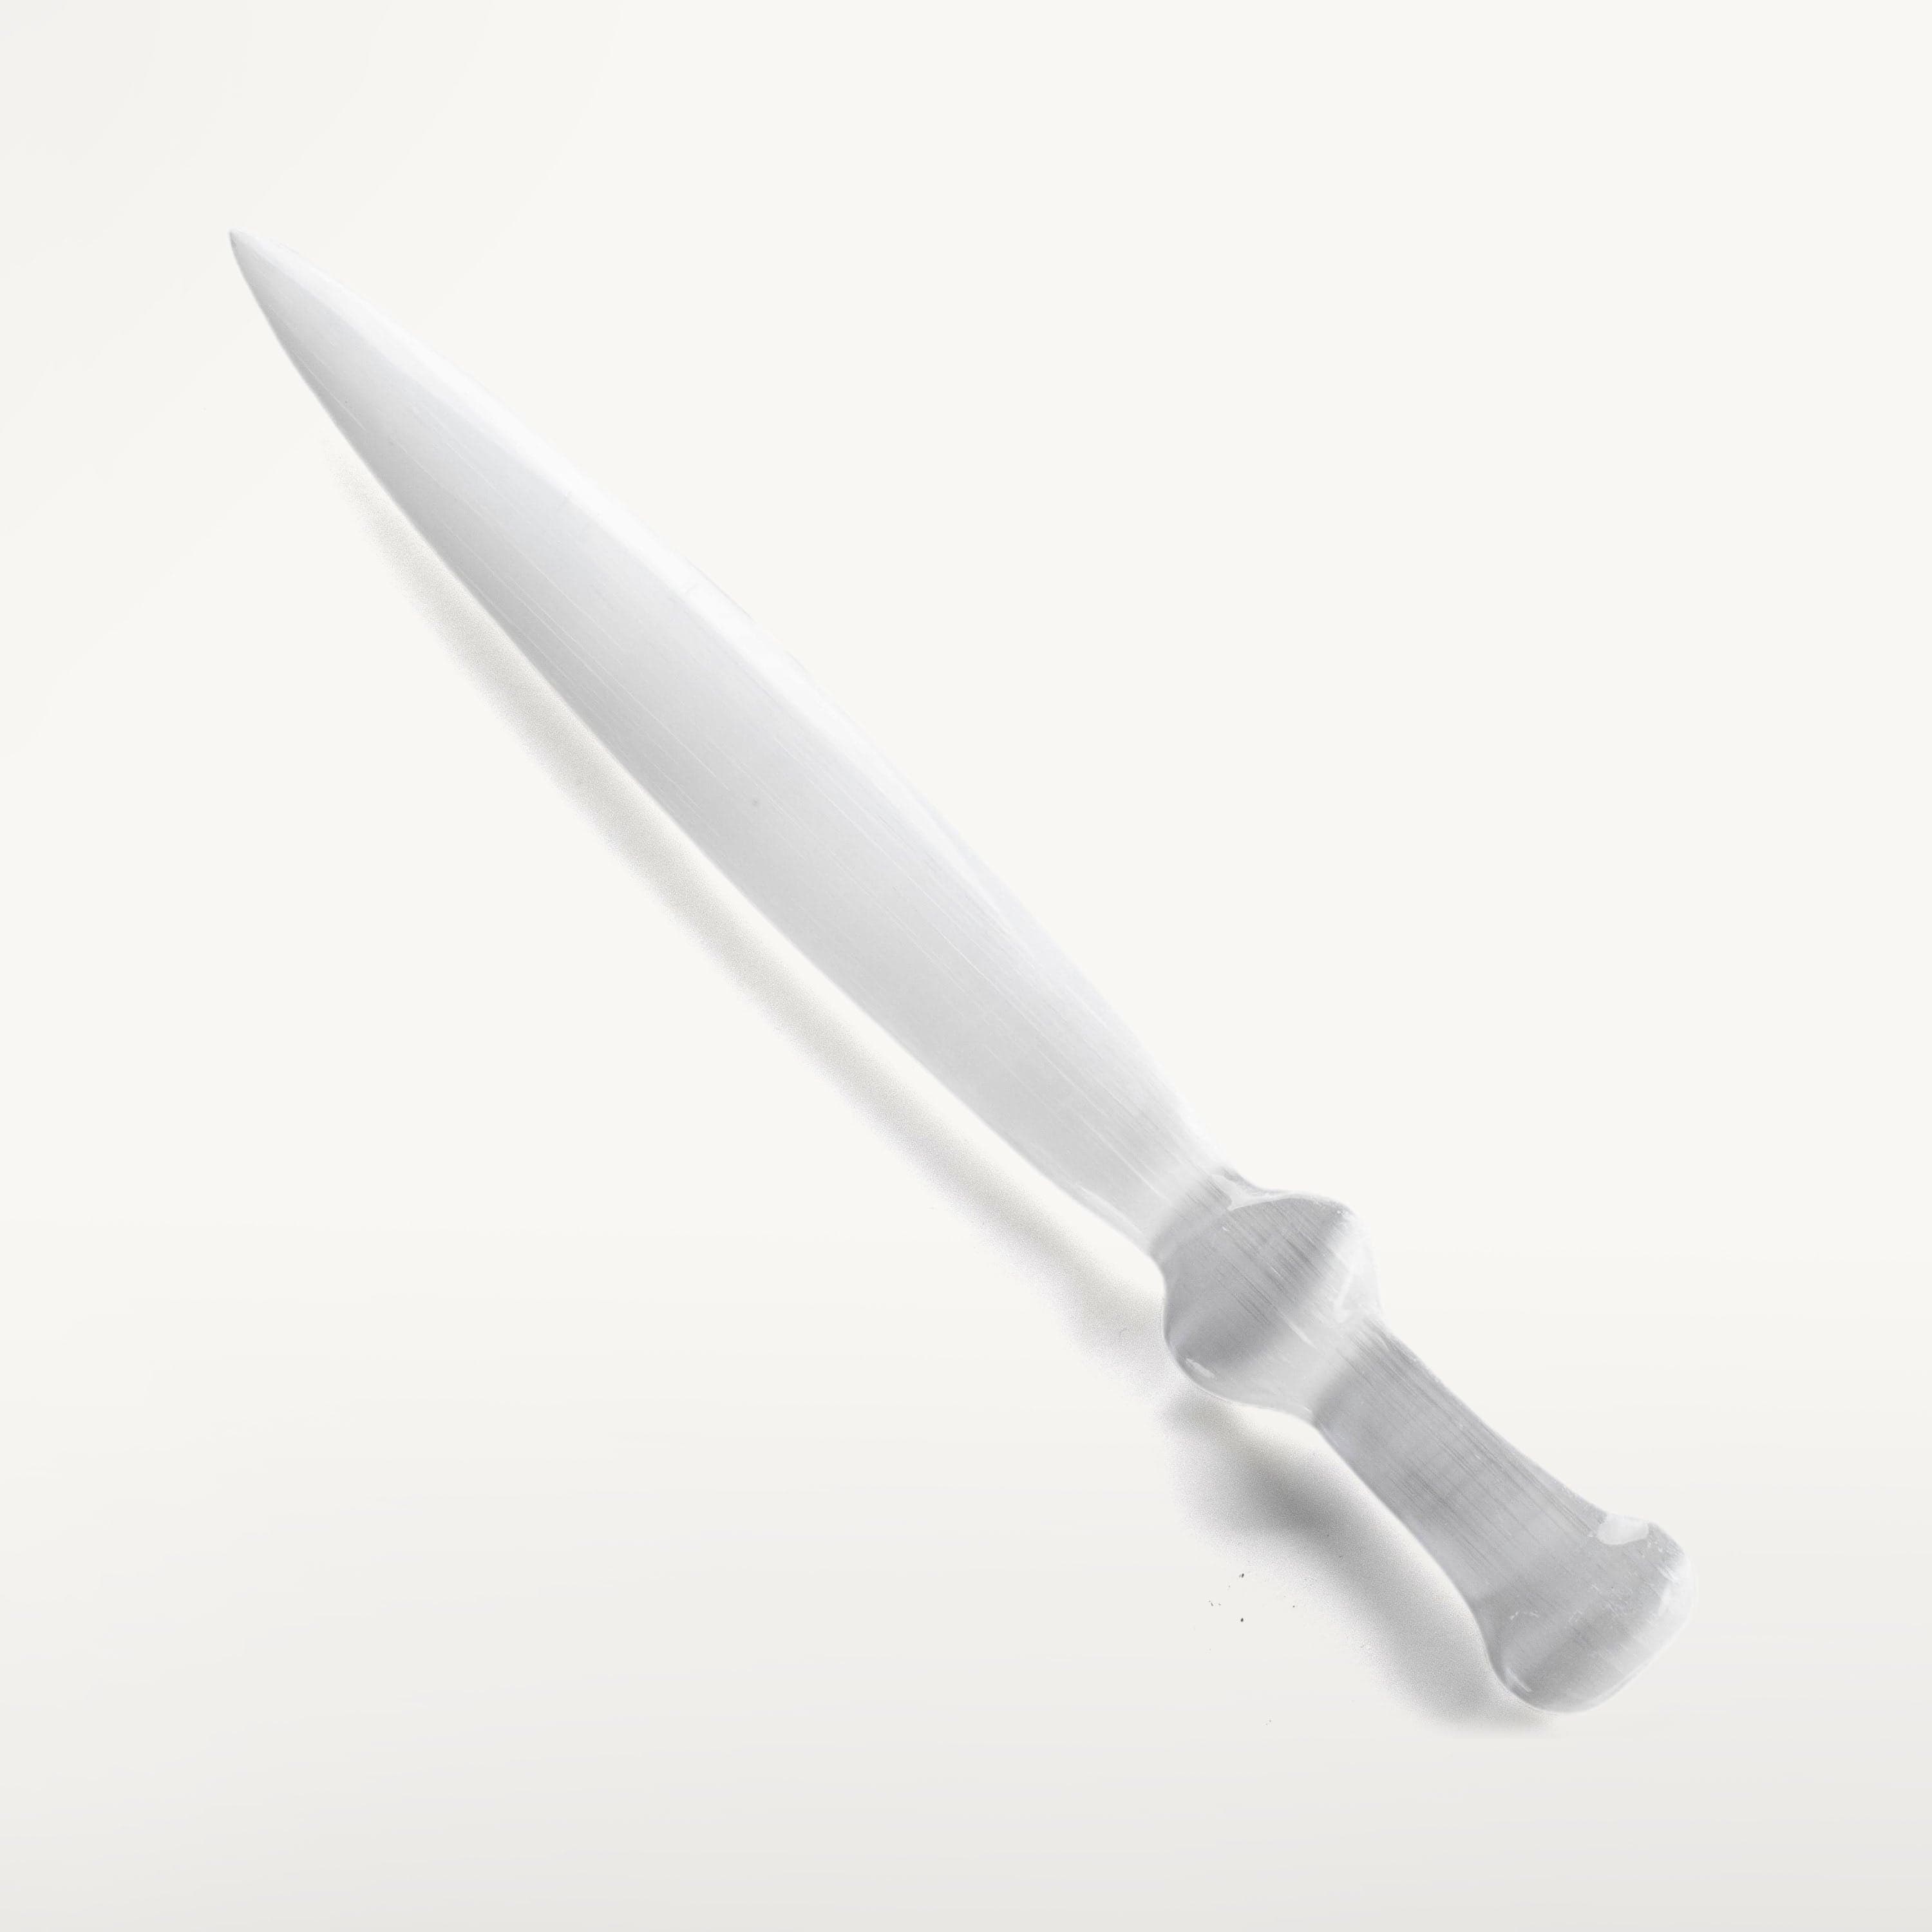 KALIFANO Selenite Selenite Sword - 13.5 in SD80-S